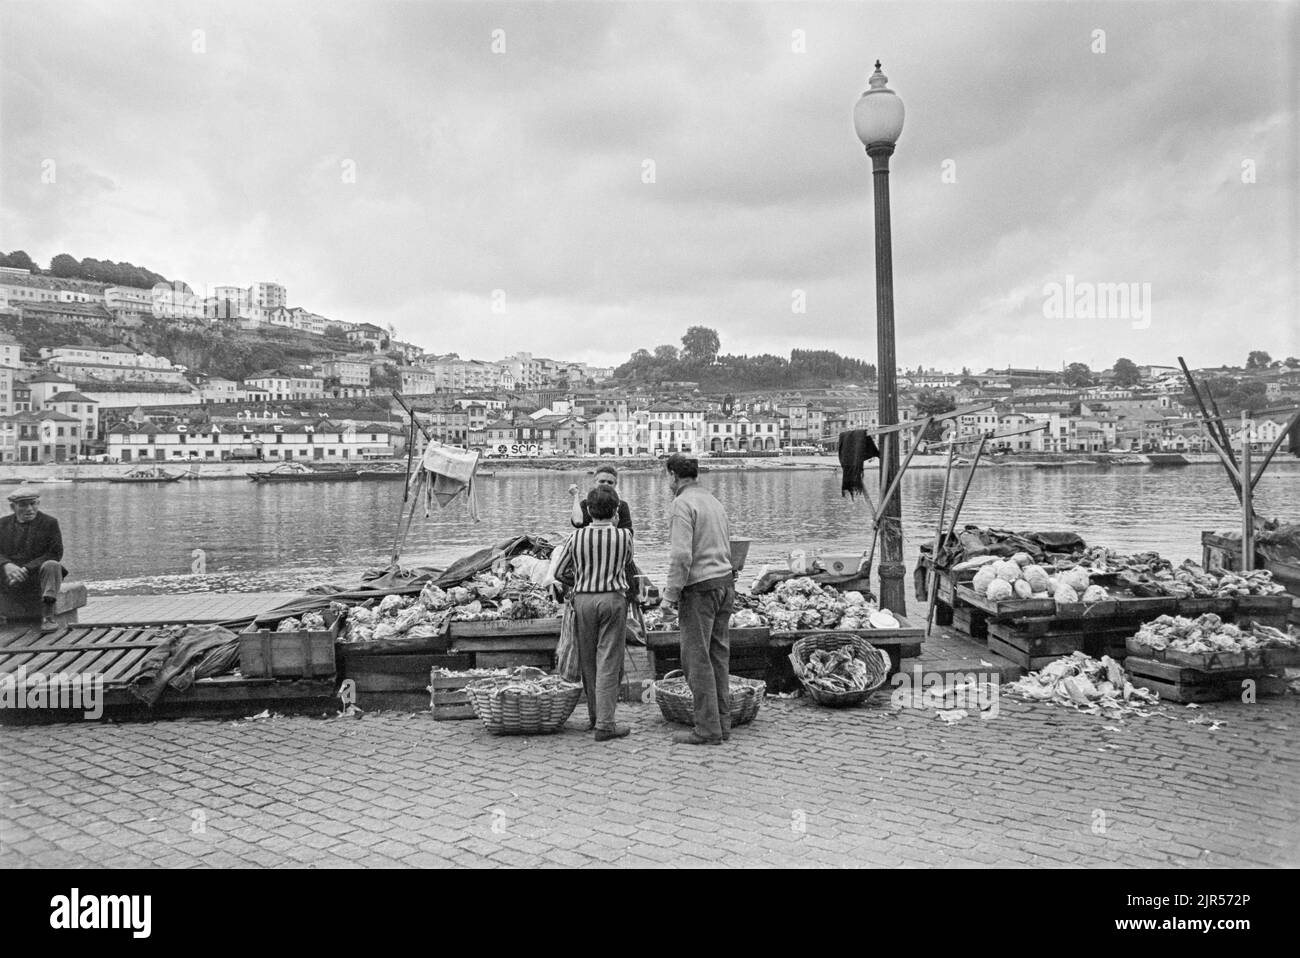 PORTOGALLO - PORTO - 1970. Un mercato vicino al fiume Douro nel quartiere Ribeira di Porto, Portogallo settentrionale. Foto del copyright: Di Peter Eastland. Foto Stock